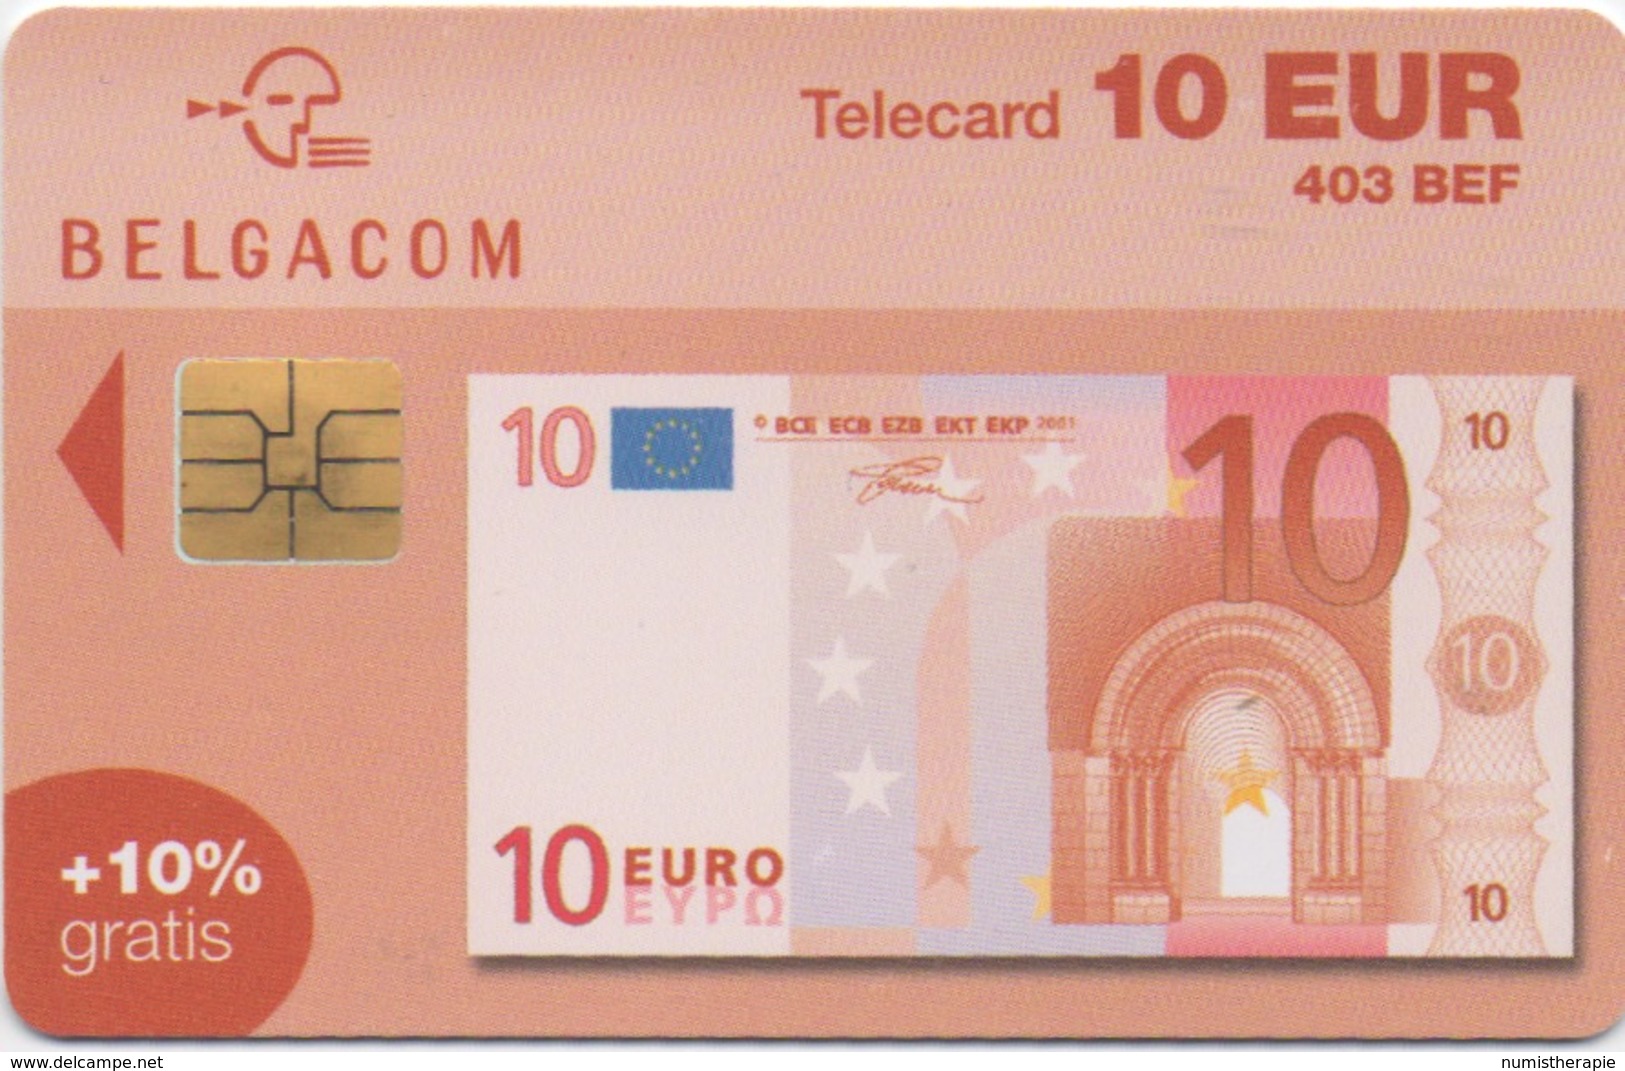 Télécarte Belgacom : 10 EUR Billet De Banque (403 BEF) Valable Jusqu'au 31/12/2004 - Stamps & Coins